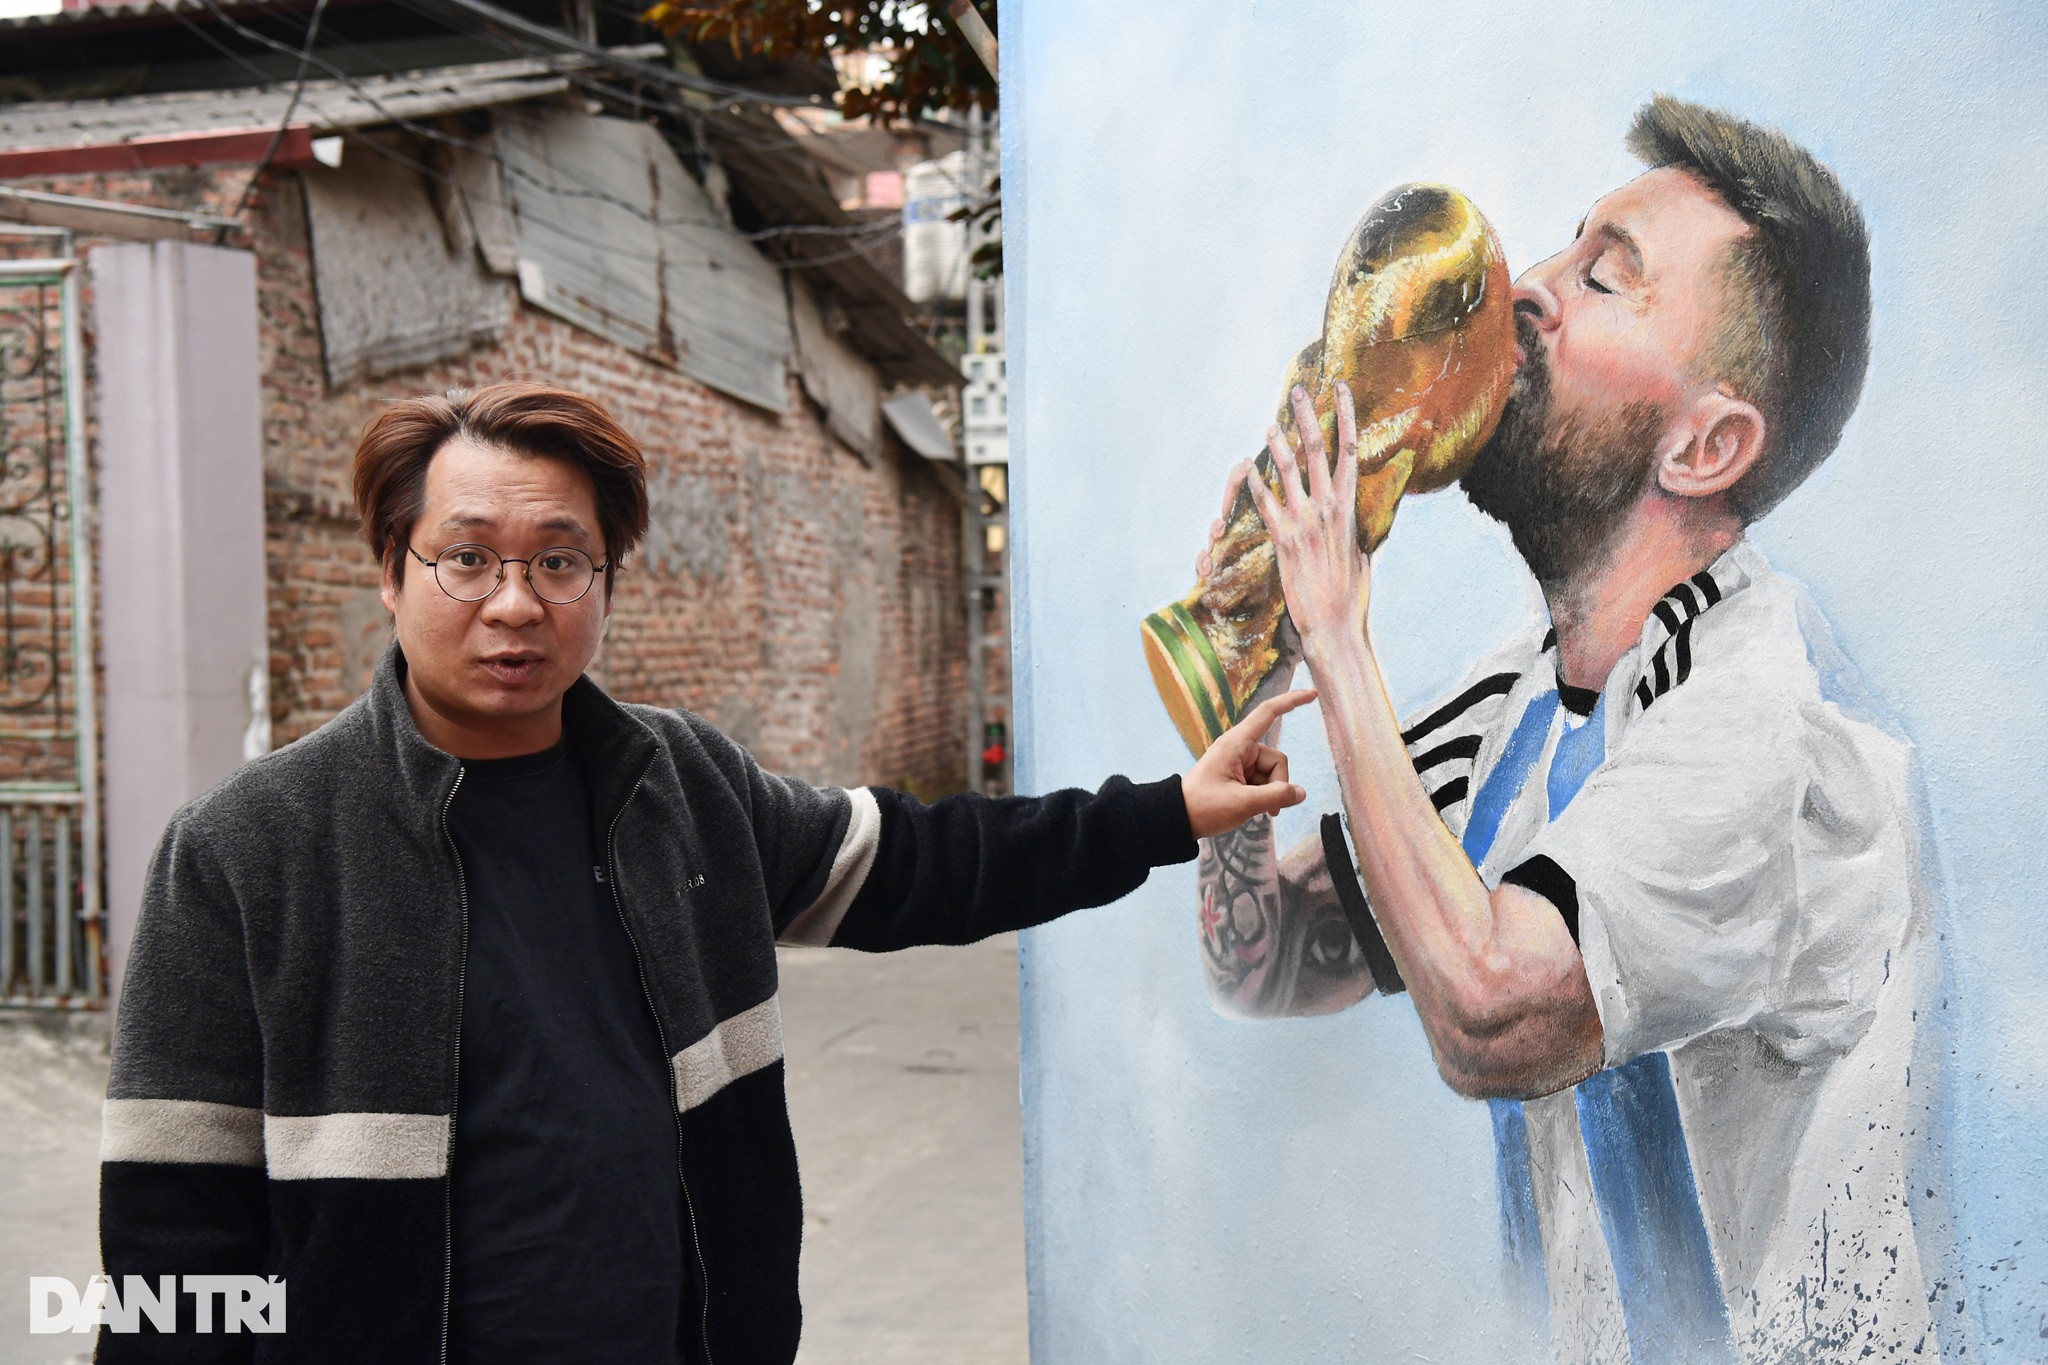 Artwork & Messi: Ngưỡng mộ tài năng của Lionel Messi không chỉ ở trên sân cỏ mà còn qua những tác phẩm nghệ thuật vô cùng ấn tượng. Hãy thưởng thức những tác phẩm nghệ thuật đầy sáng tạo về Messi và cùng trầm trồ với tài năng phi thường của anh!